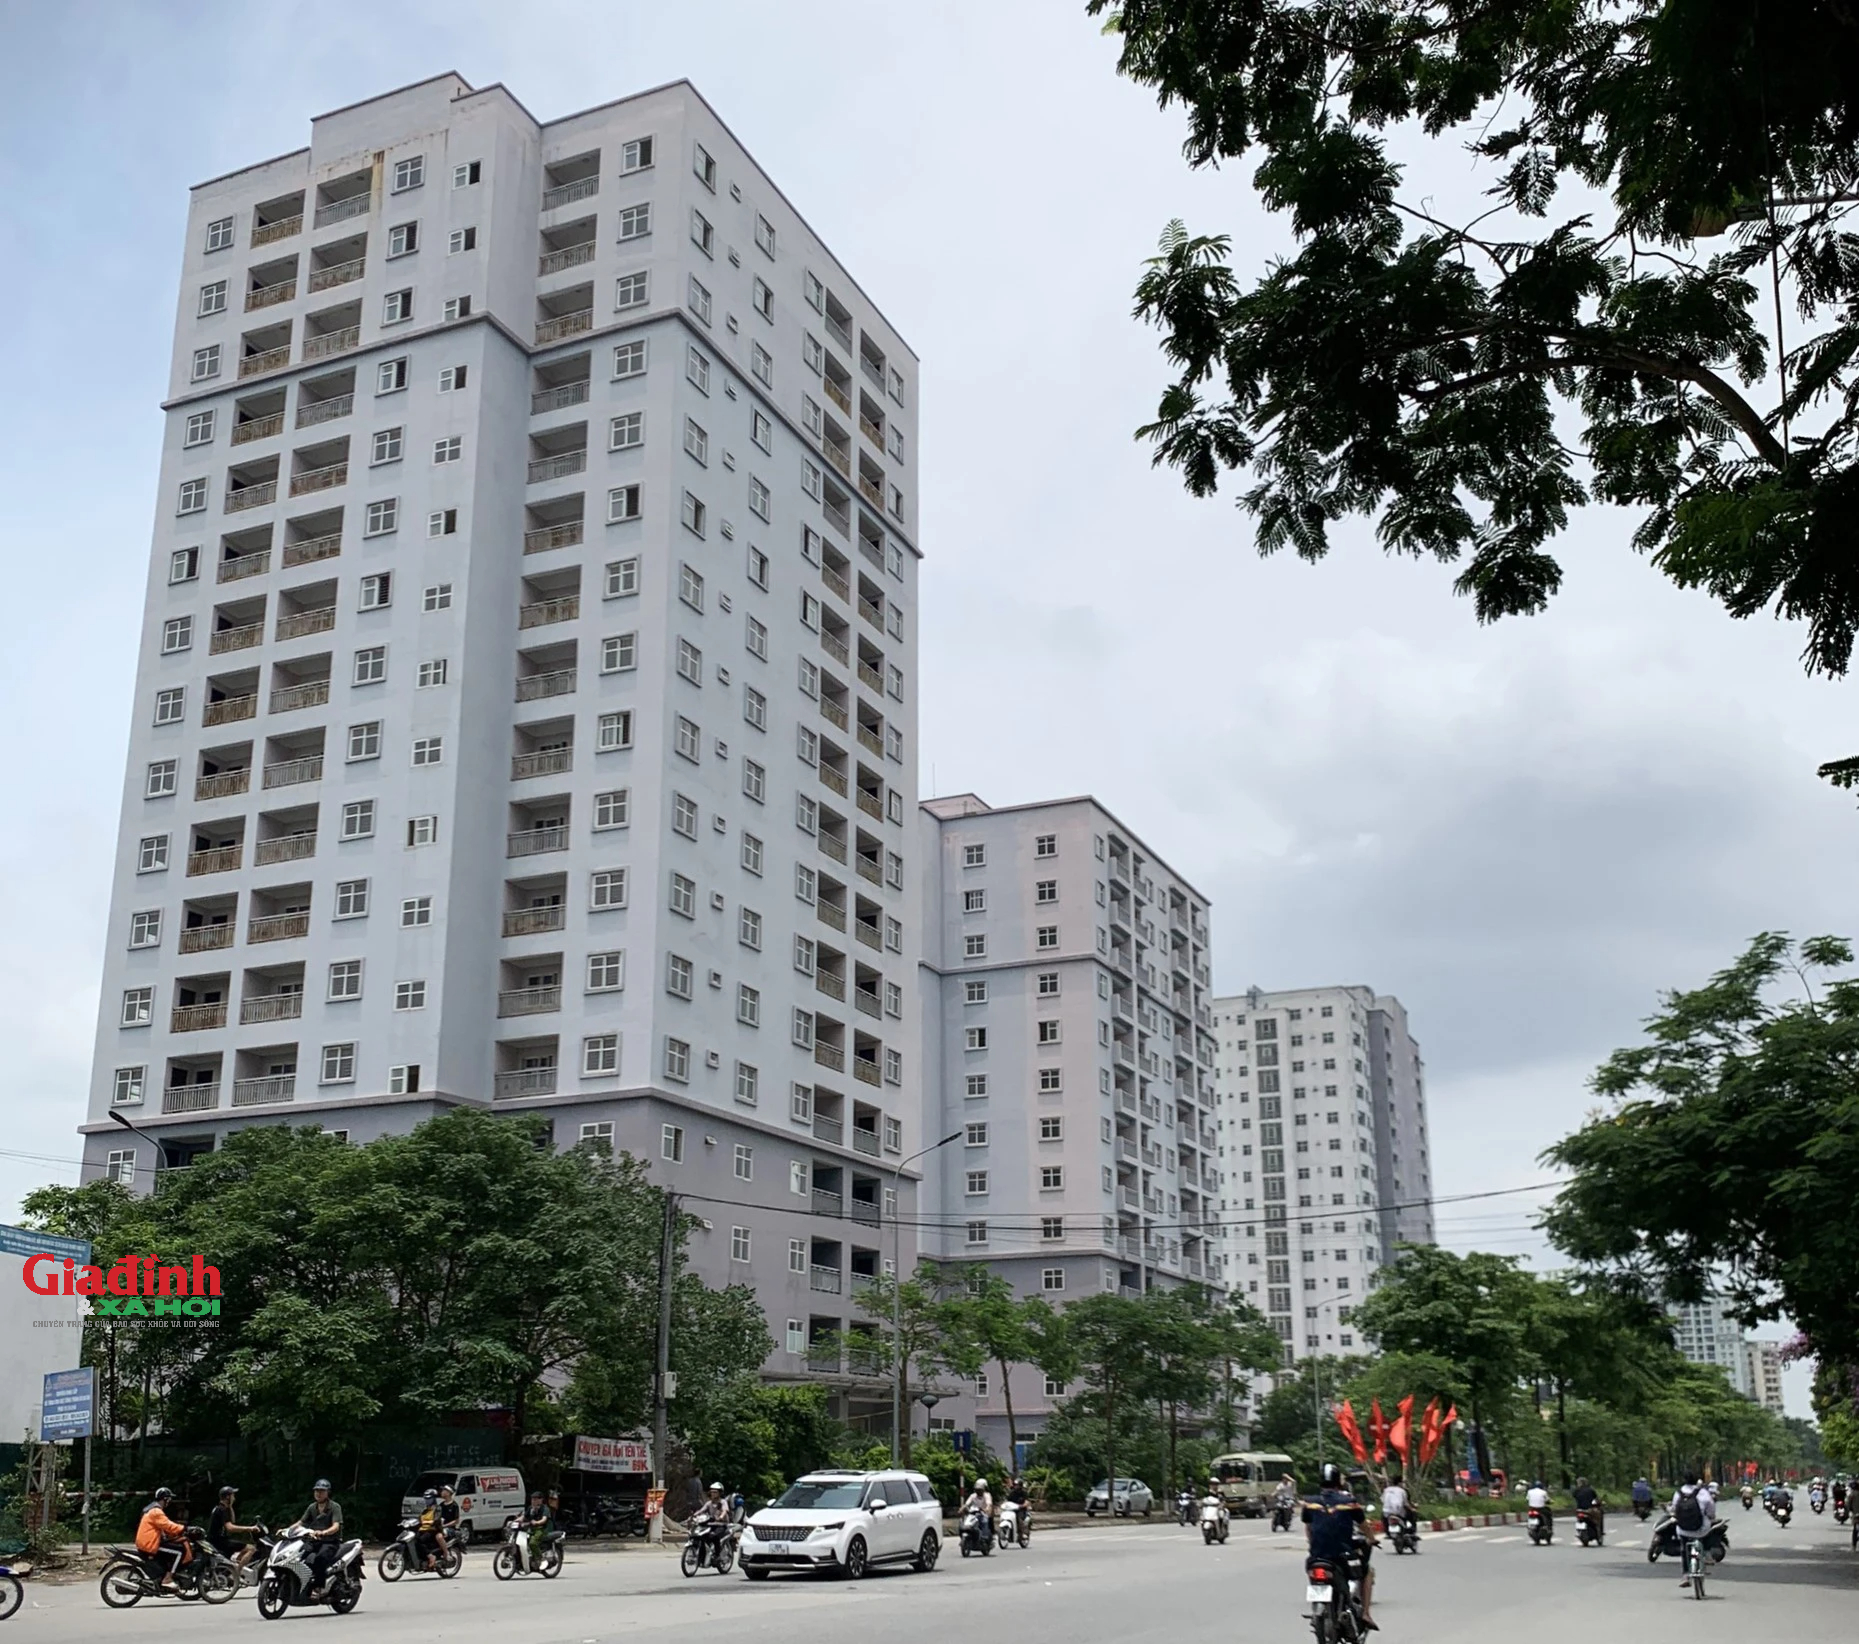 Hà Nội: Dự án tái định cư trì trệ, hàng ngàn căn hộ bị bỏ hoang nhiều năm - Ảnh 1.